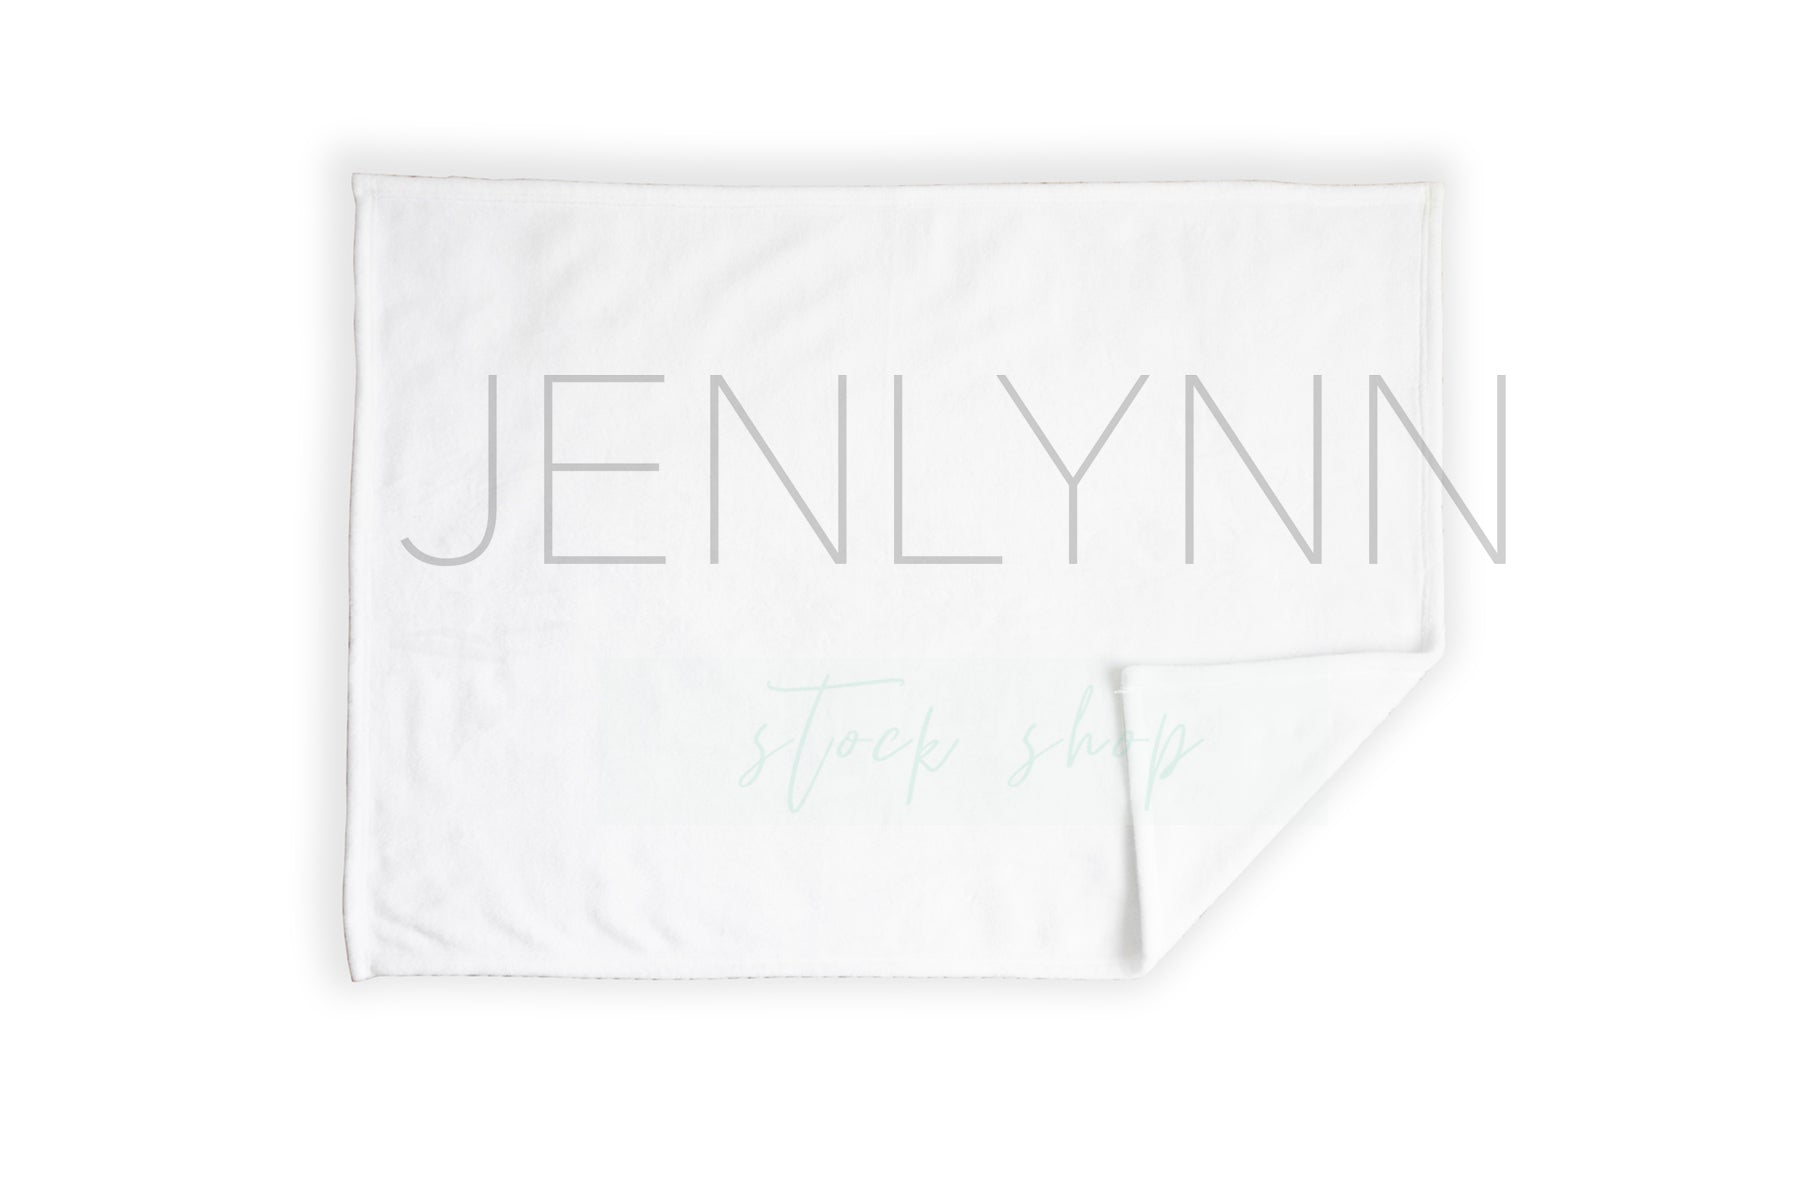 30x40 Minky Blanket Mockup #2 PSD - JENLYNN Stock Shop